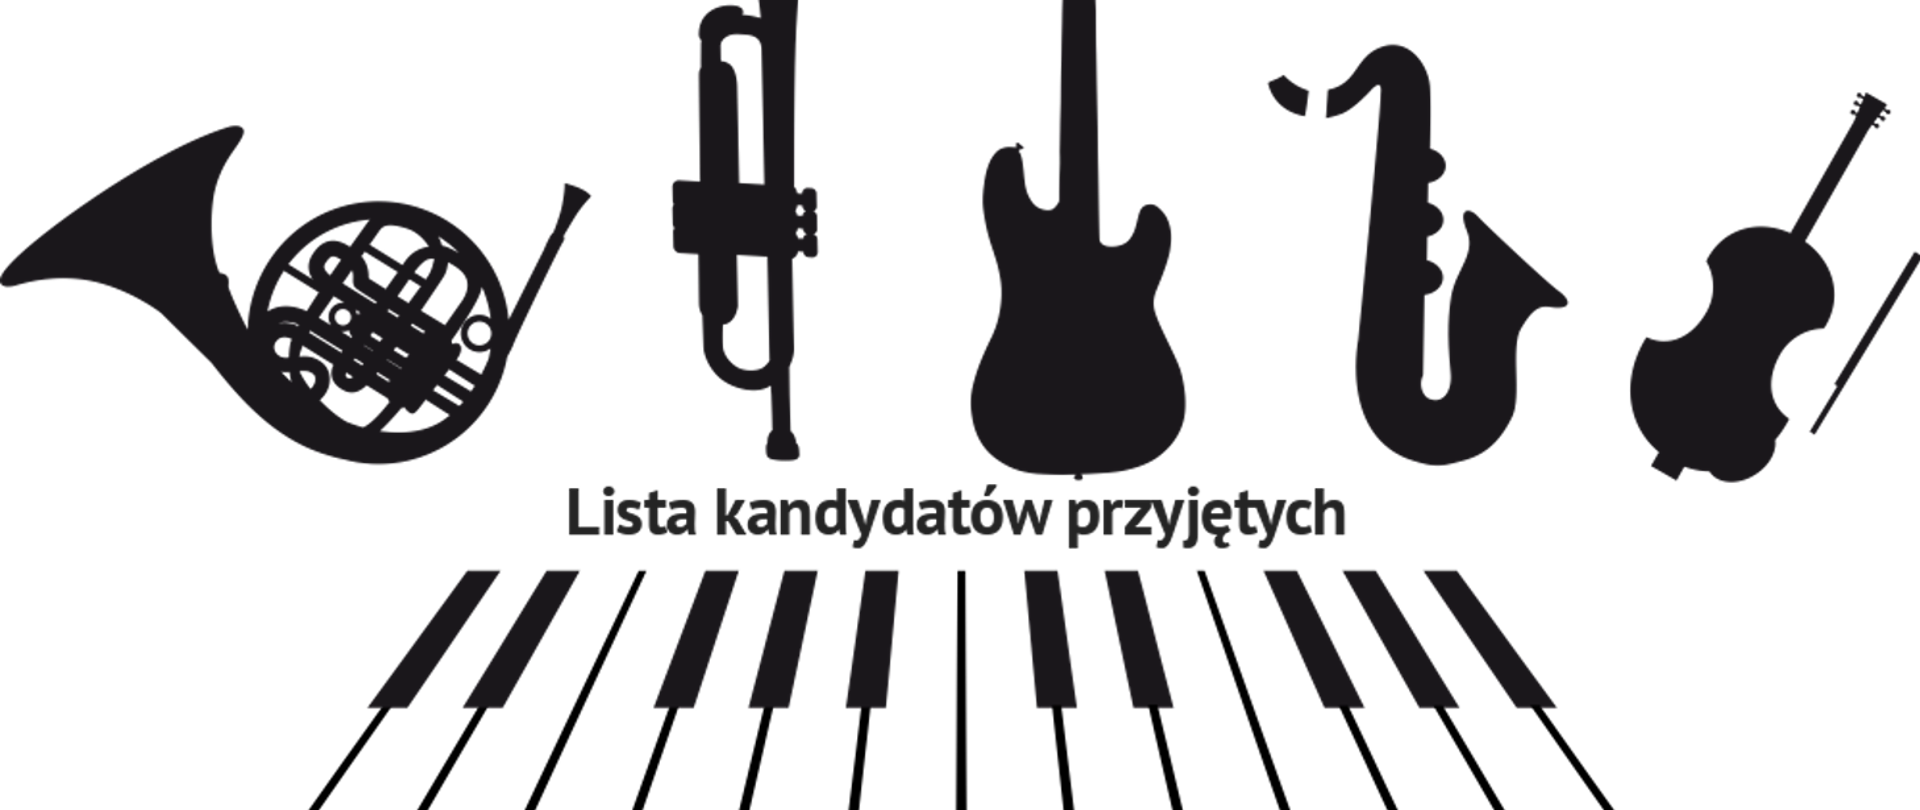 Na białym tle czarne ikony instrumentów muzycznych oraz napis "Lista kandydatów przyjętych ".